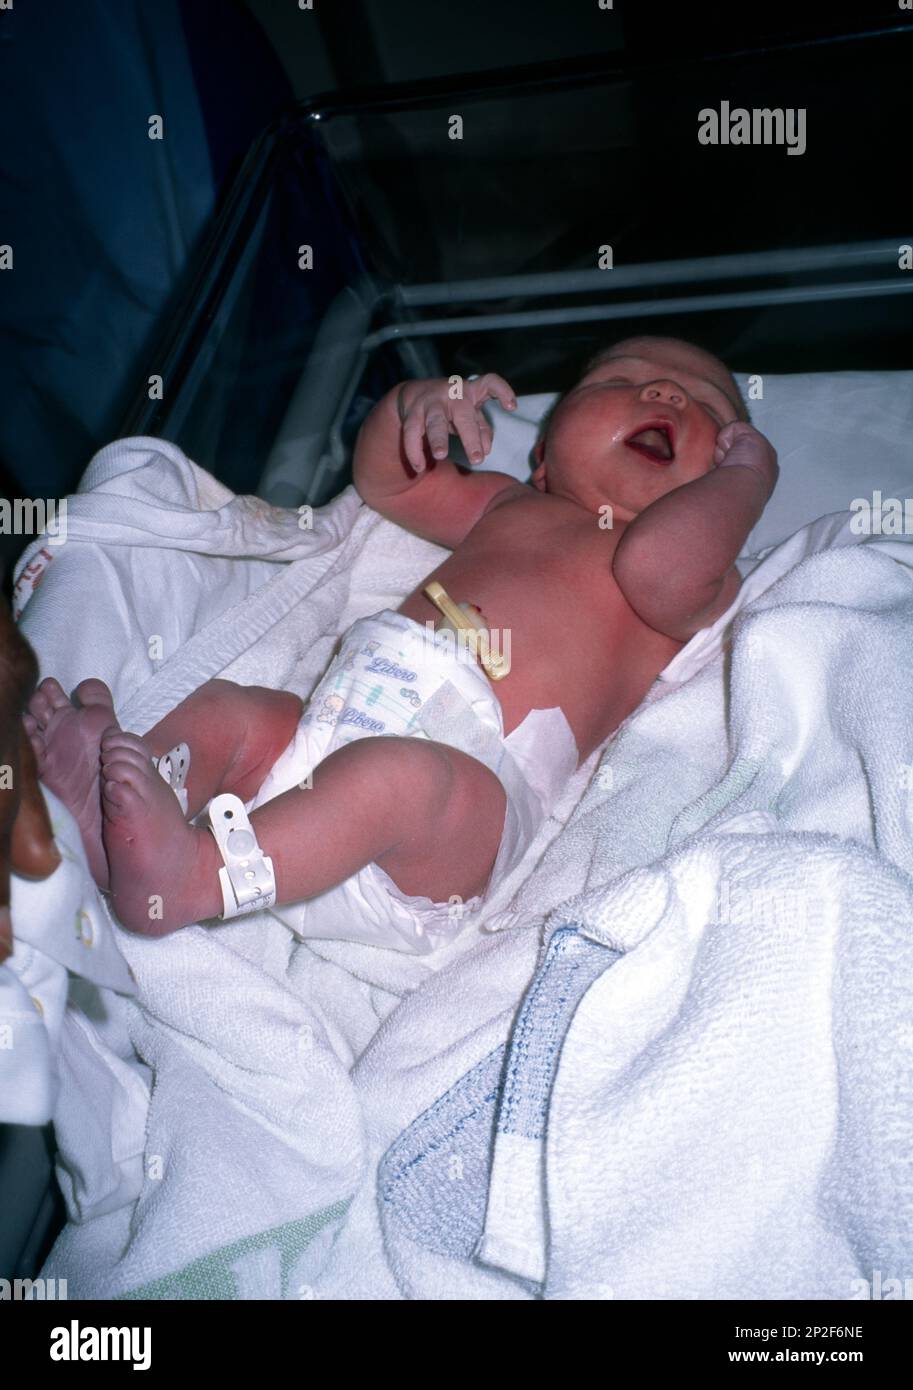 Bébé Garçon Nouveau-né Dans Le Berceau D'hôpital Photo stock - Image du  couverture, enfant: 72155504